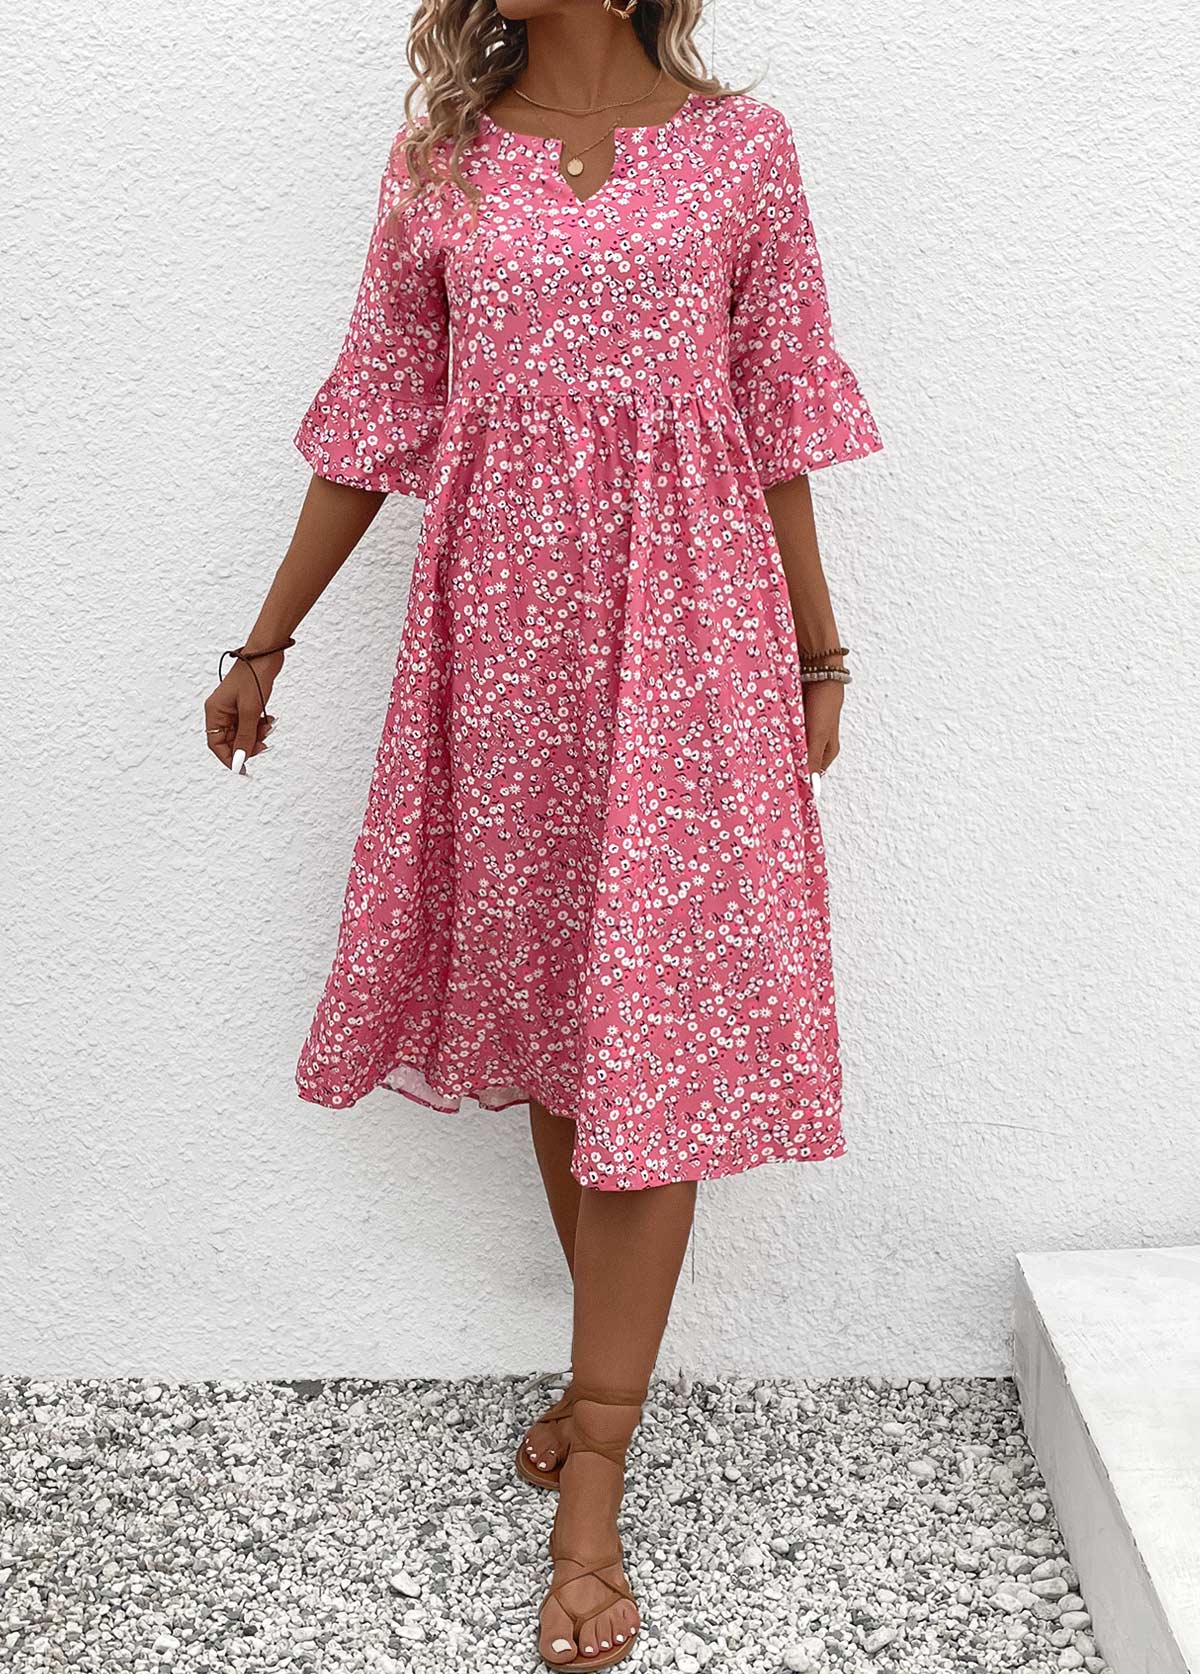 Ruched Ditsy Floral Print Pink Split Neck Dress